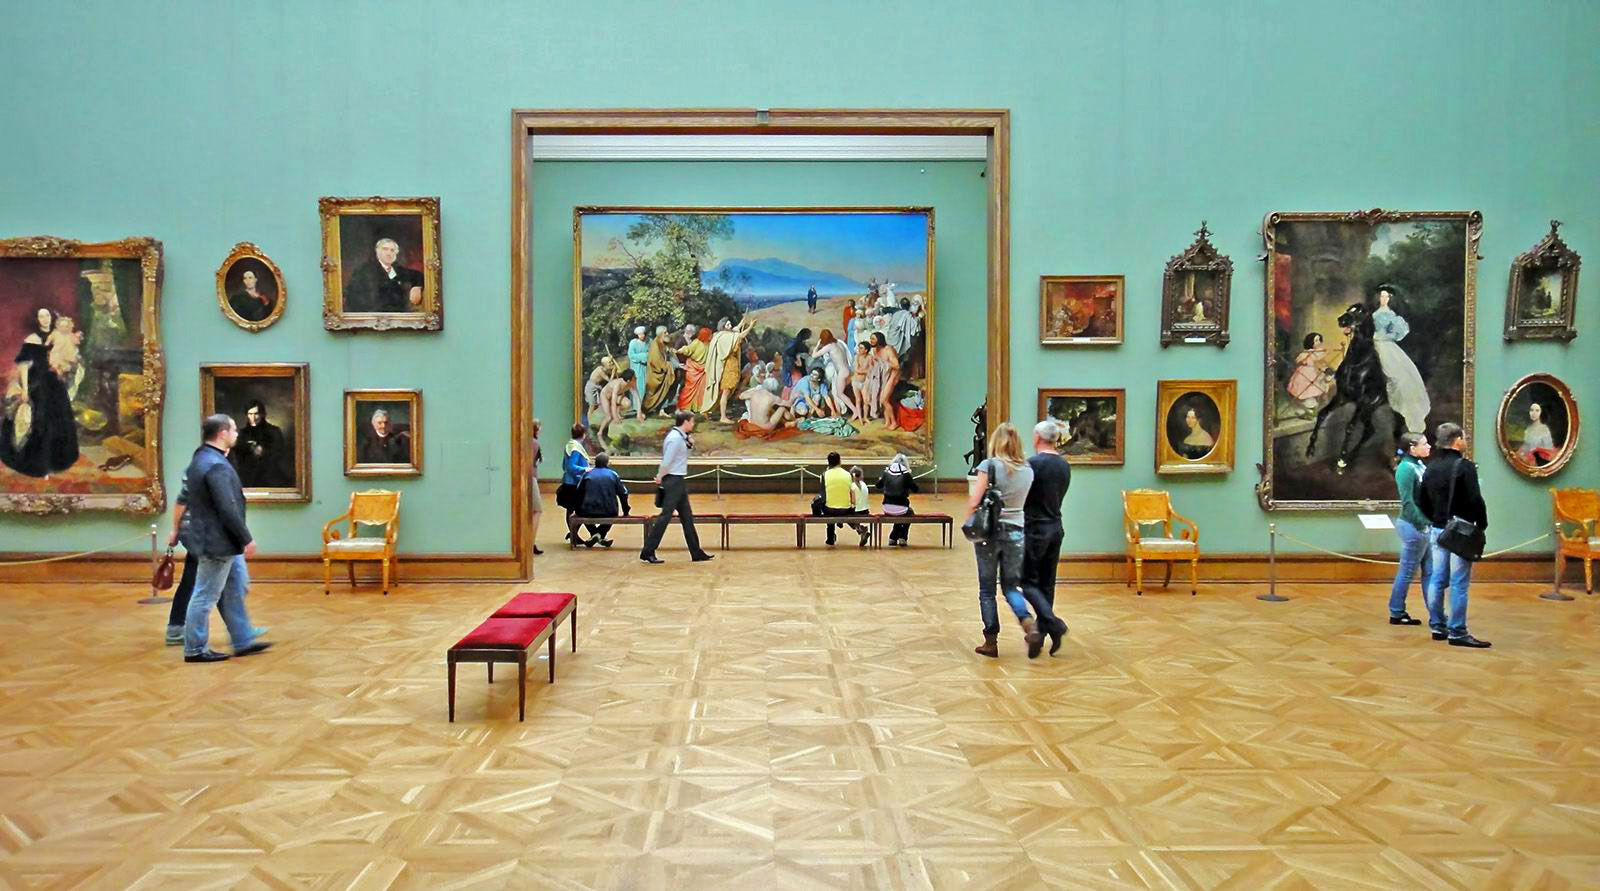 Galería Tretiakov de Moscú alberga los pintores rusos. Iconos, retratos, paisajes. Gujía sobre qué museo visitar